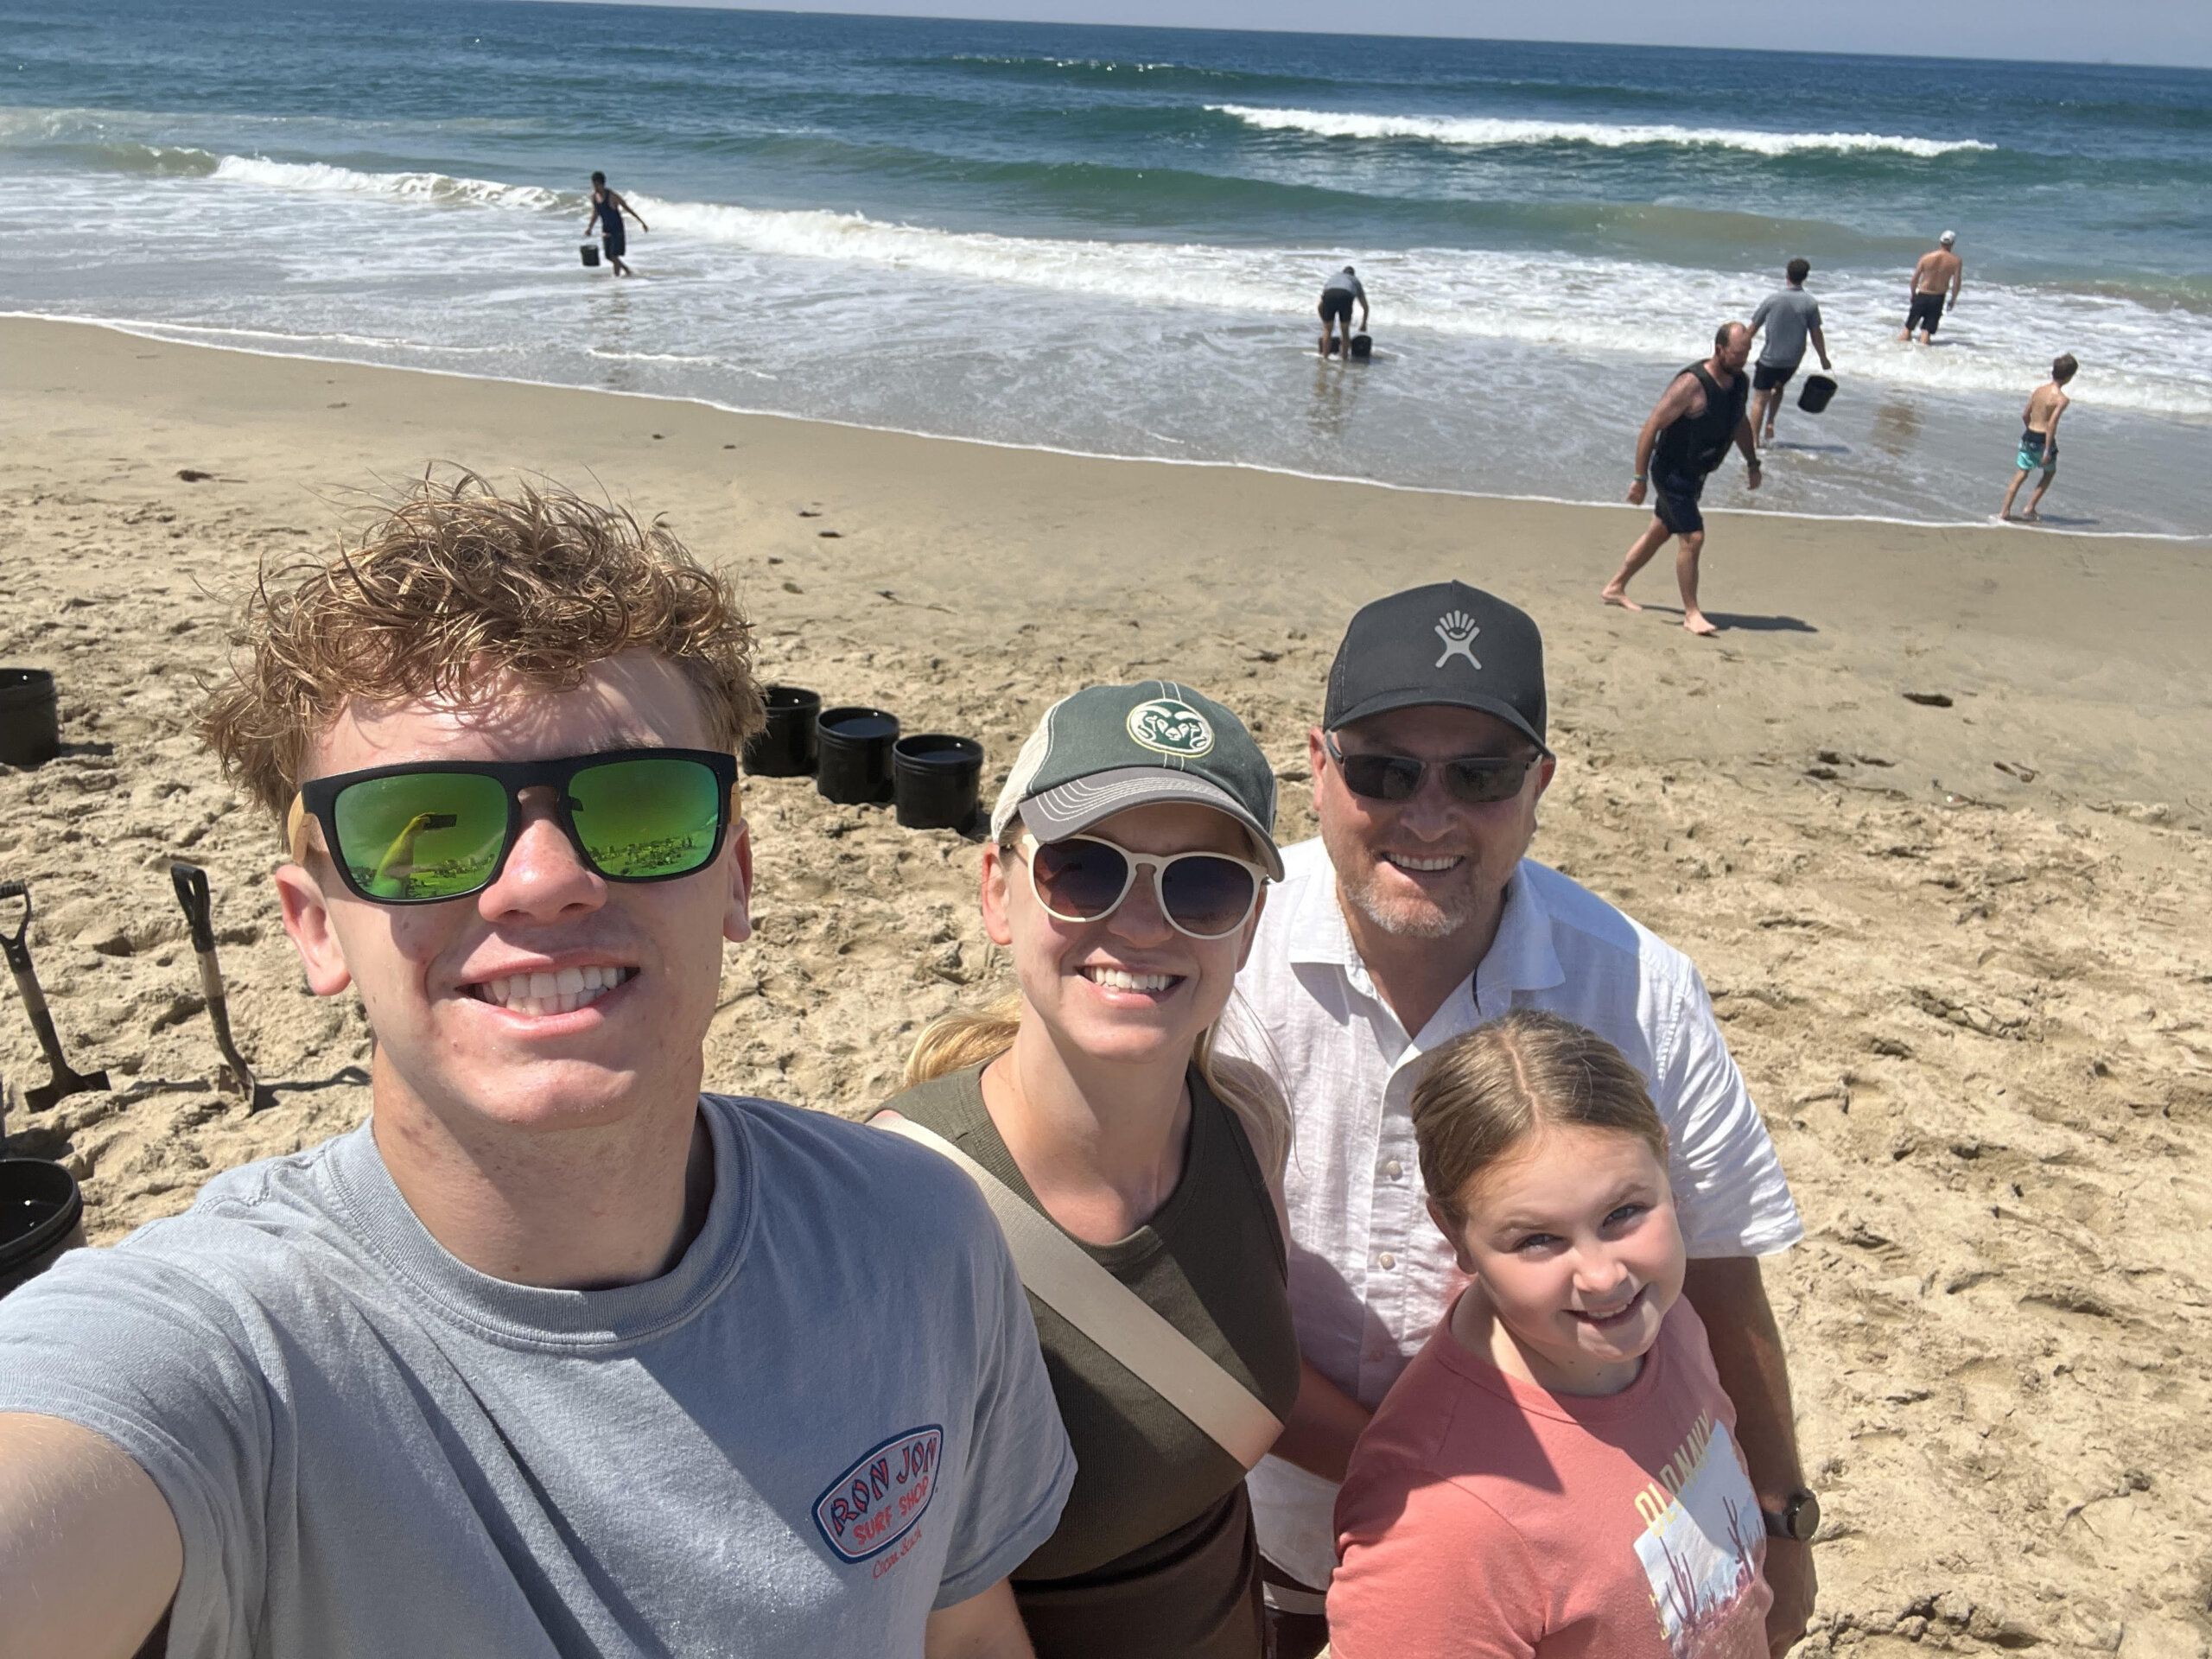 Family of four on the beach near an ocean.